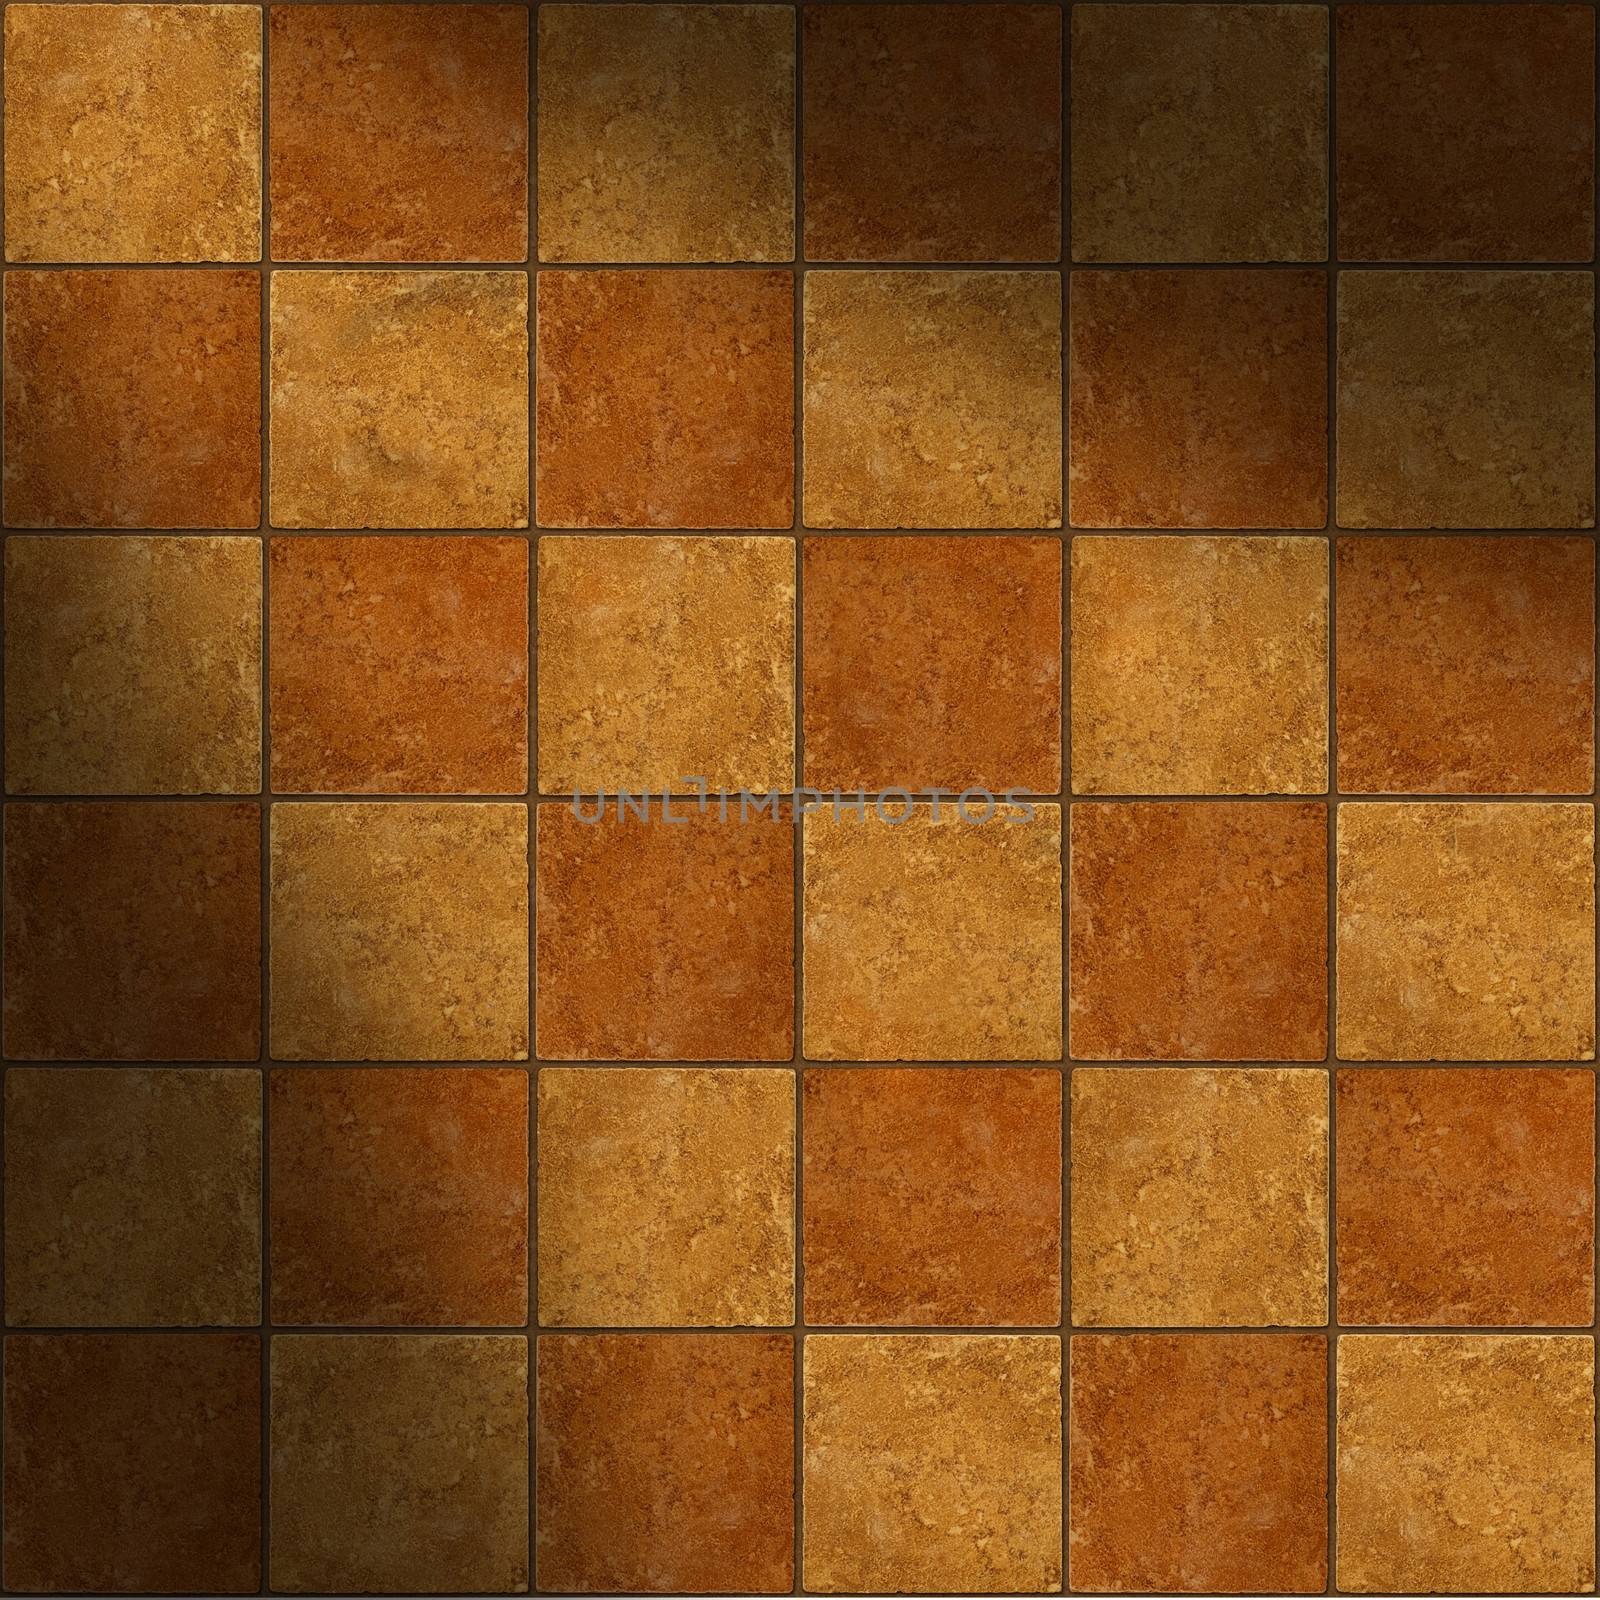 Thirty-six ceramic two-tone brown stone tiles lit diagonally